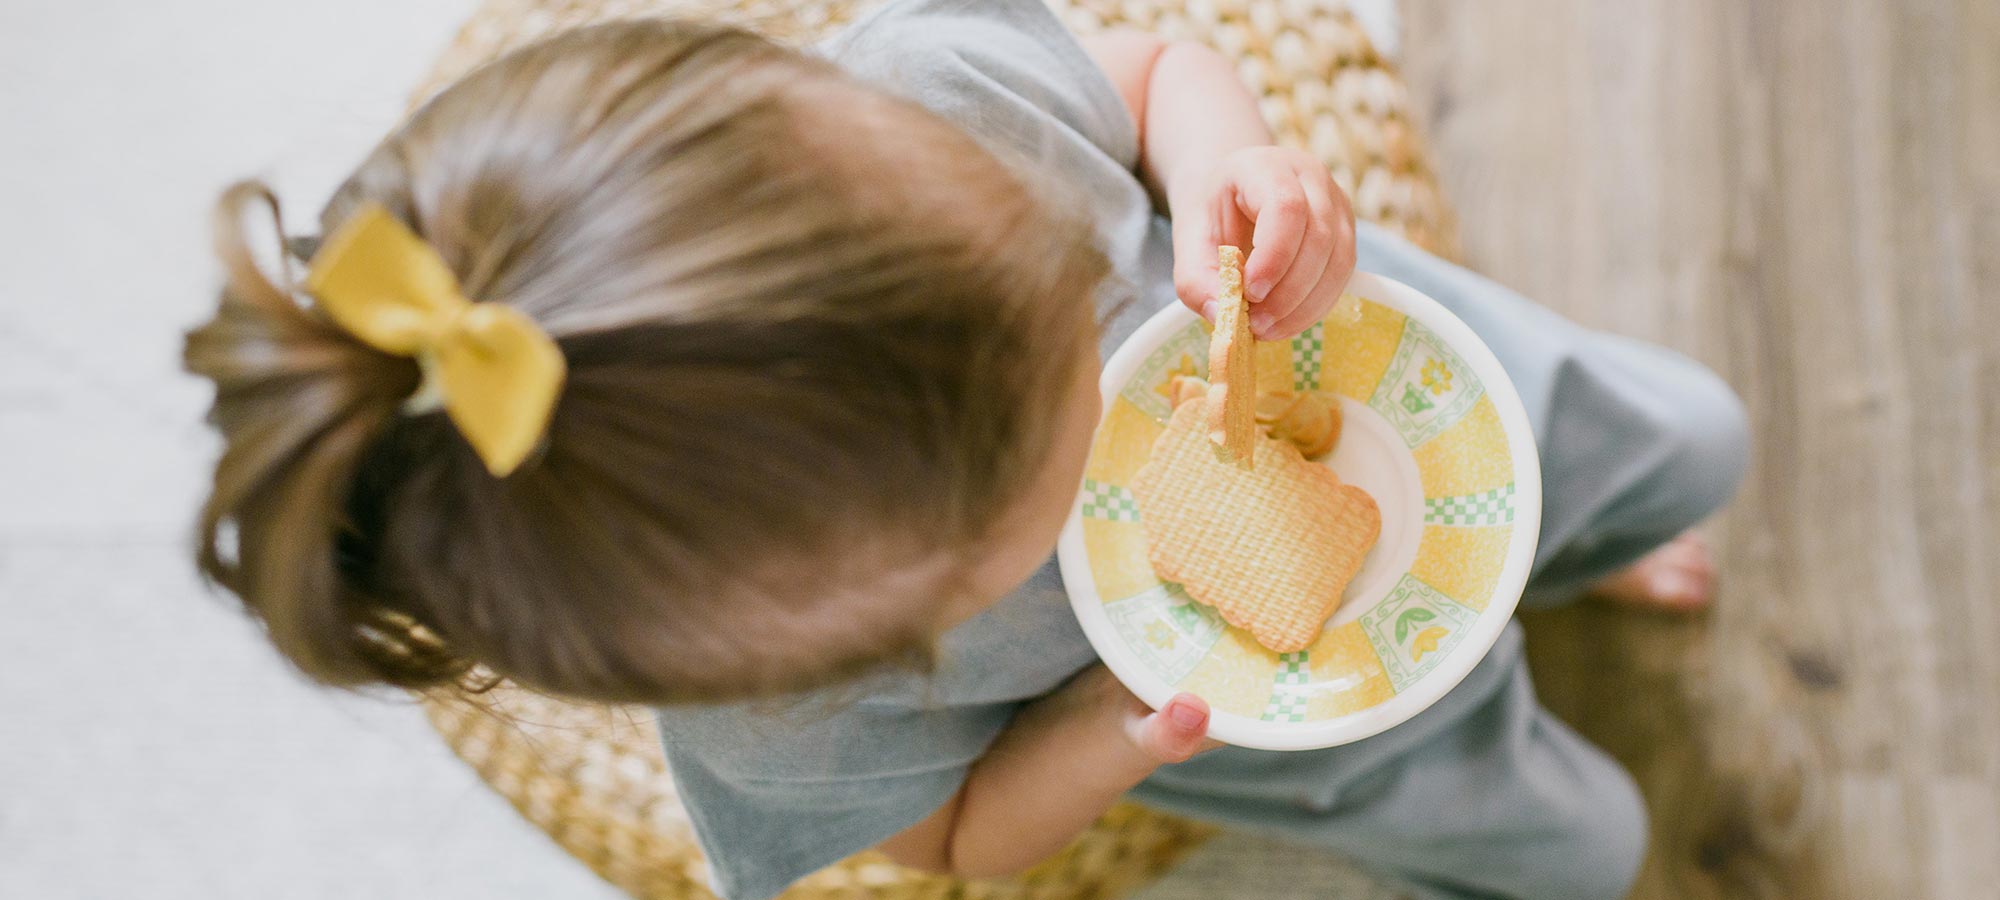 bambina seduta fotografata dall'alto merenda biscotti capelli biondi fiocco giallo